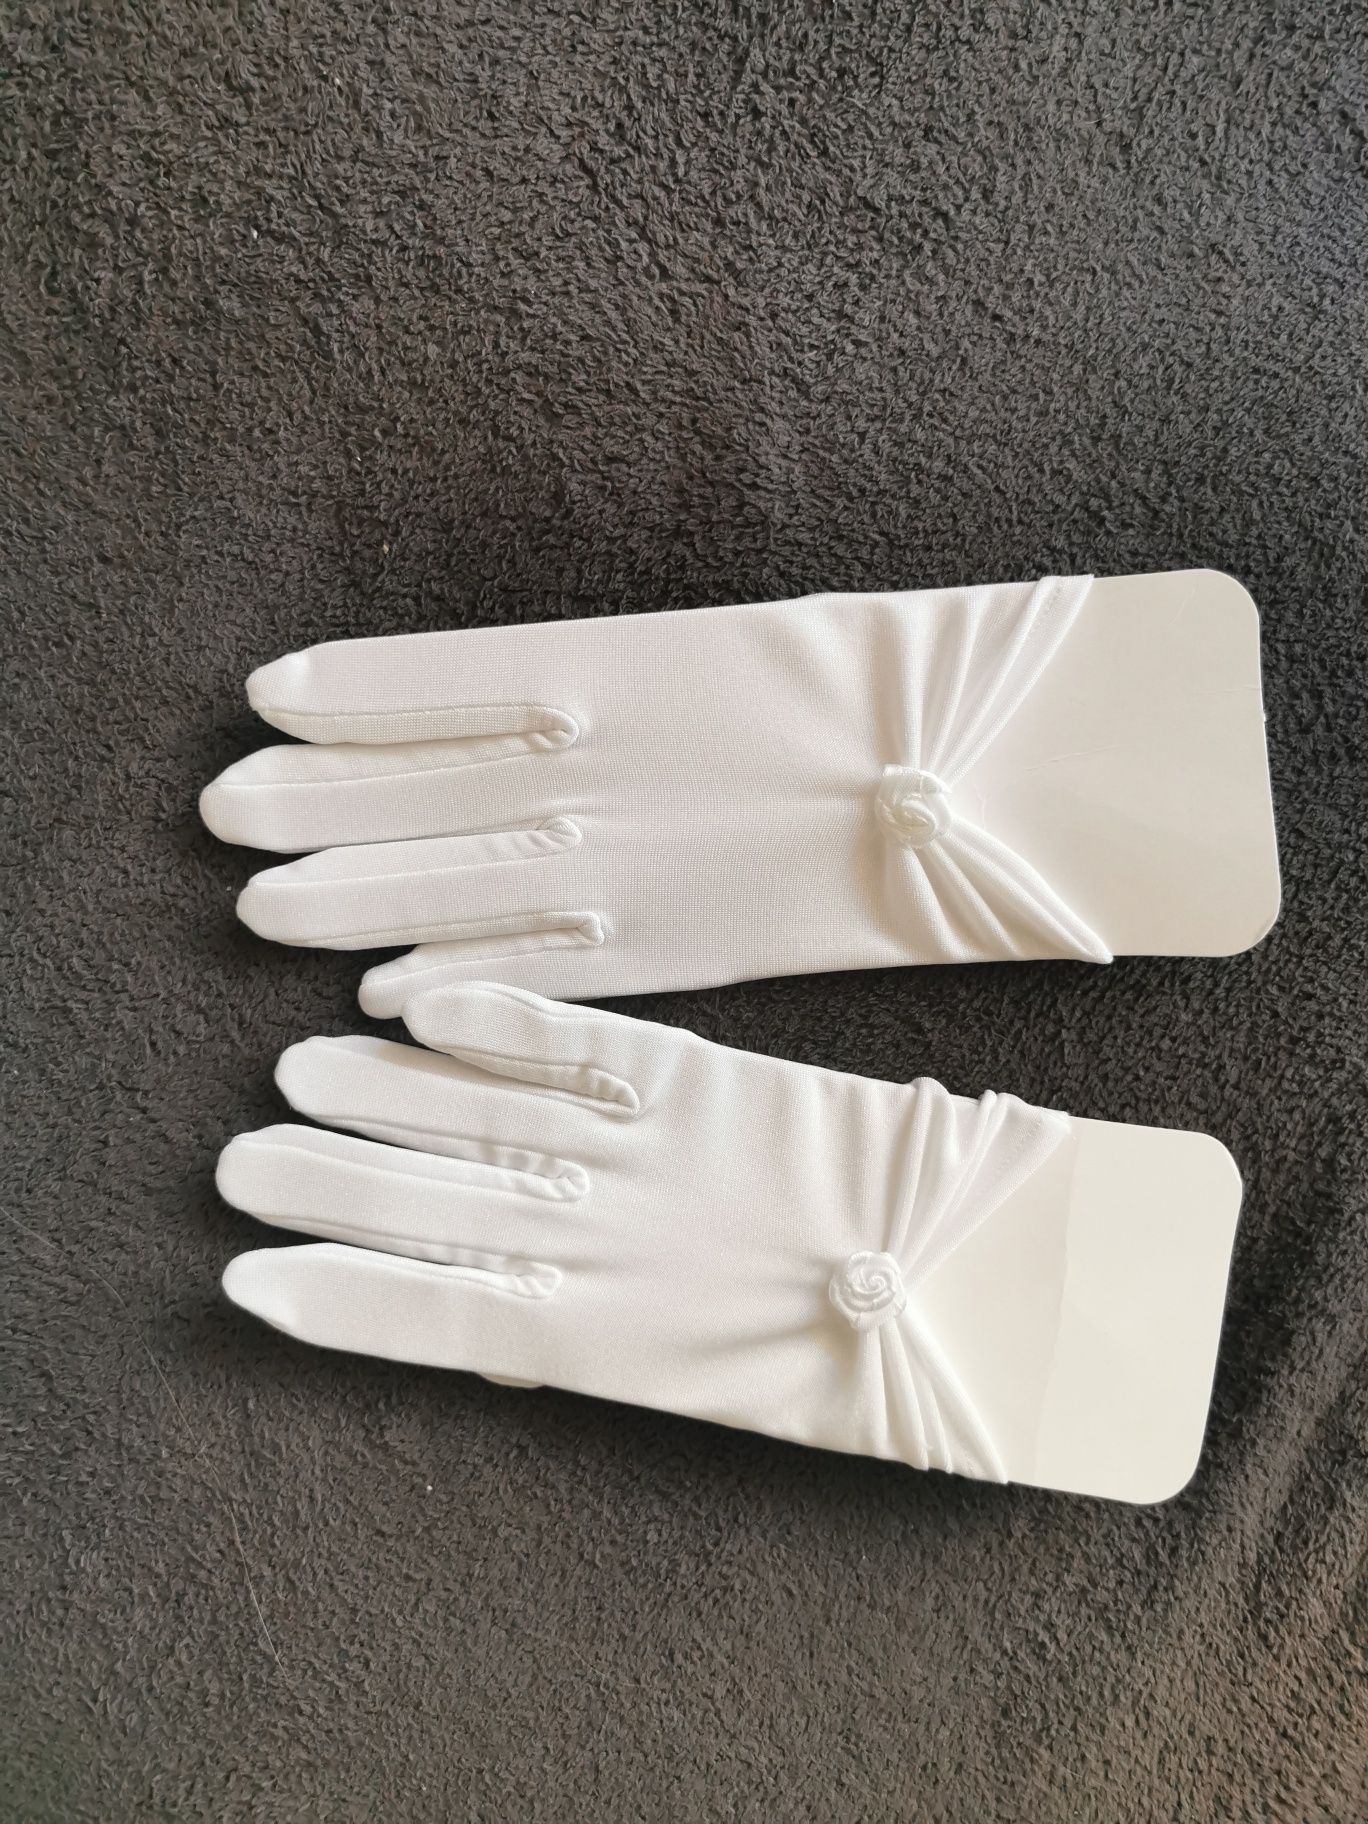 Rękawiczki komunijne